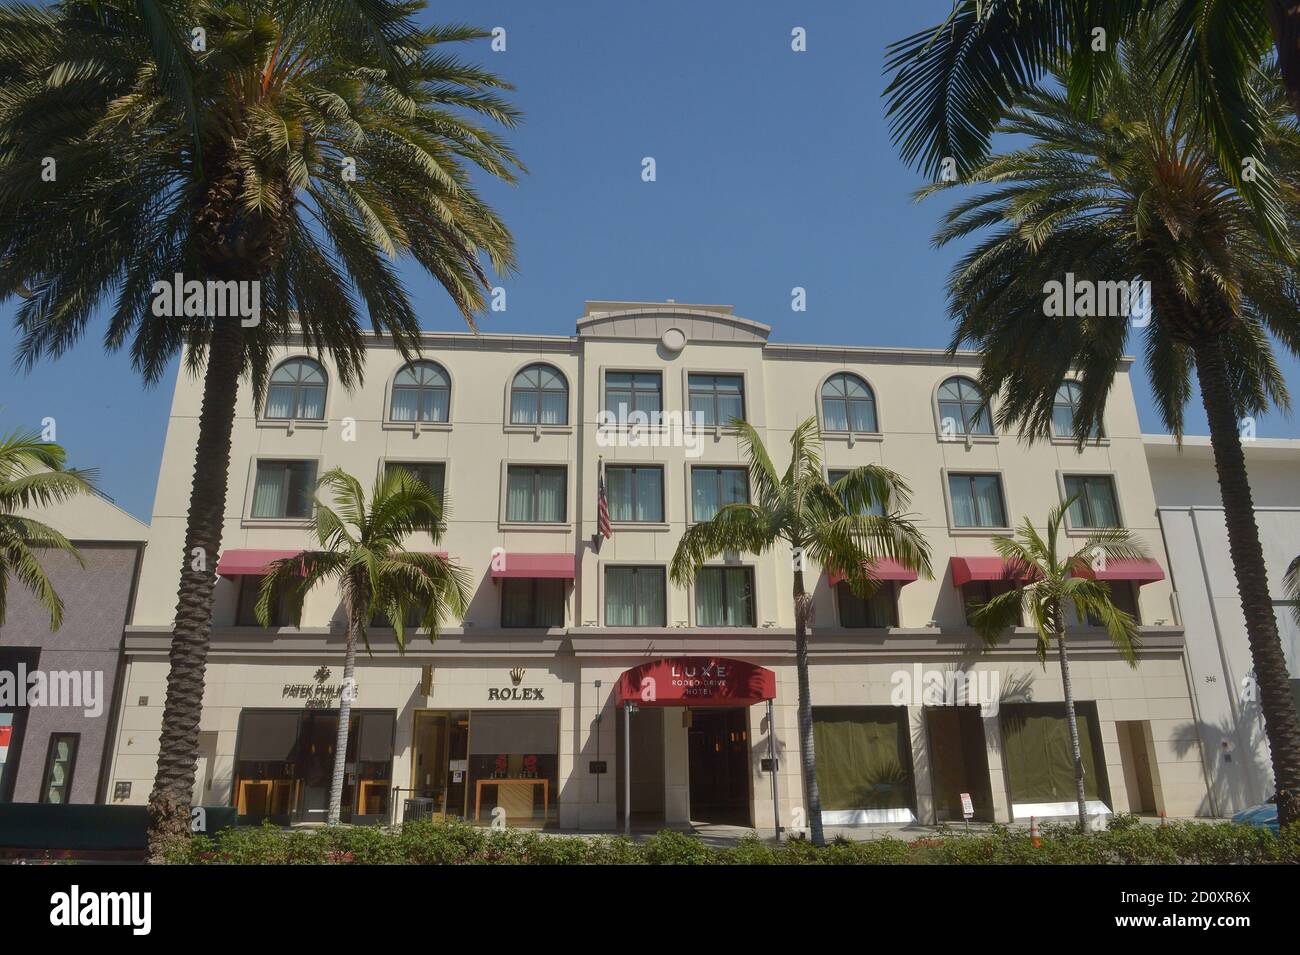 Beverly Hills, États-Unis. 03ème octobre 2020. L'hôtel Luxe Rodeo Drive de Beverly Hills est photographié le vendredi 2 octobre 2020. L'hôtel a fermé ses bureaux, citant les effets financiers de la crise COVID-19, alors que la baisse marquée du tourisme et des voyages d'affaires a dévasté l'industrie hôtelière. L'hôtel Luxe Rodeo Drive est le premier hôtel haut de gamme de la région de Los Angeles à quitter ses affaires en raison de la pandémie. Photo de Jim Ruymen/UPI crédit: UPI/Alay Live News Banque D'Images